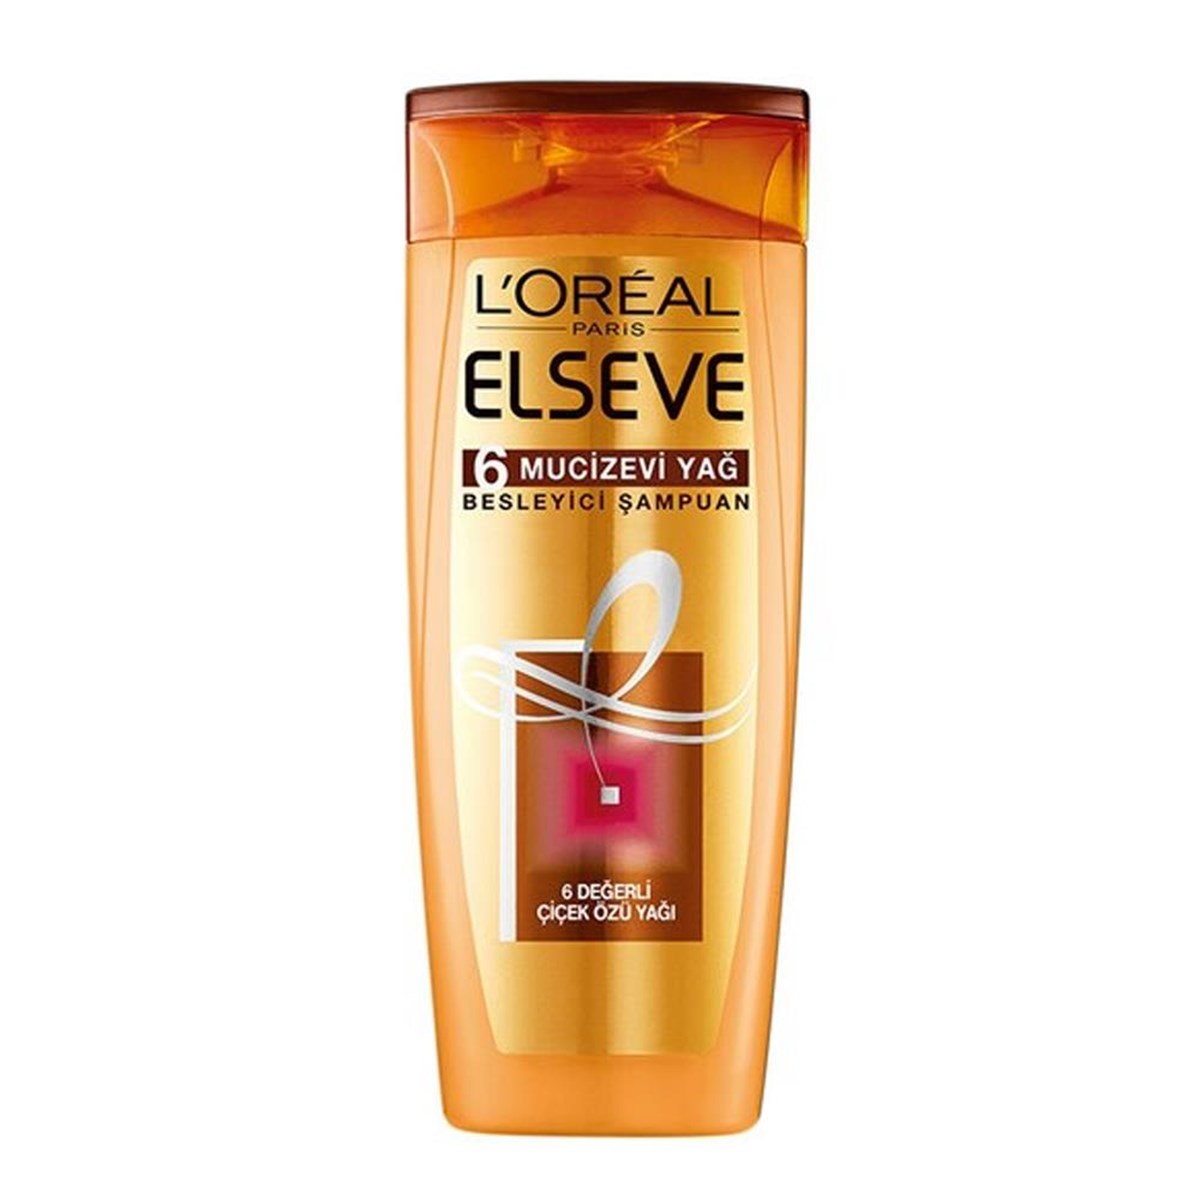 L'Oréal Paris Elseve 6 Mucizevi Yağ Besleyici Bakım Şampuanı 360 Ml  -LeylekKapıda.com